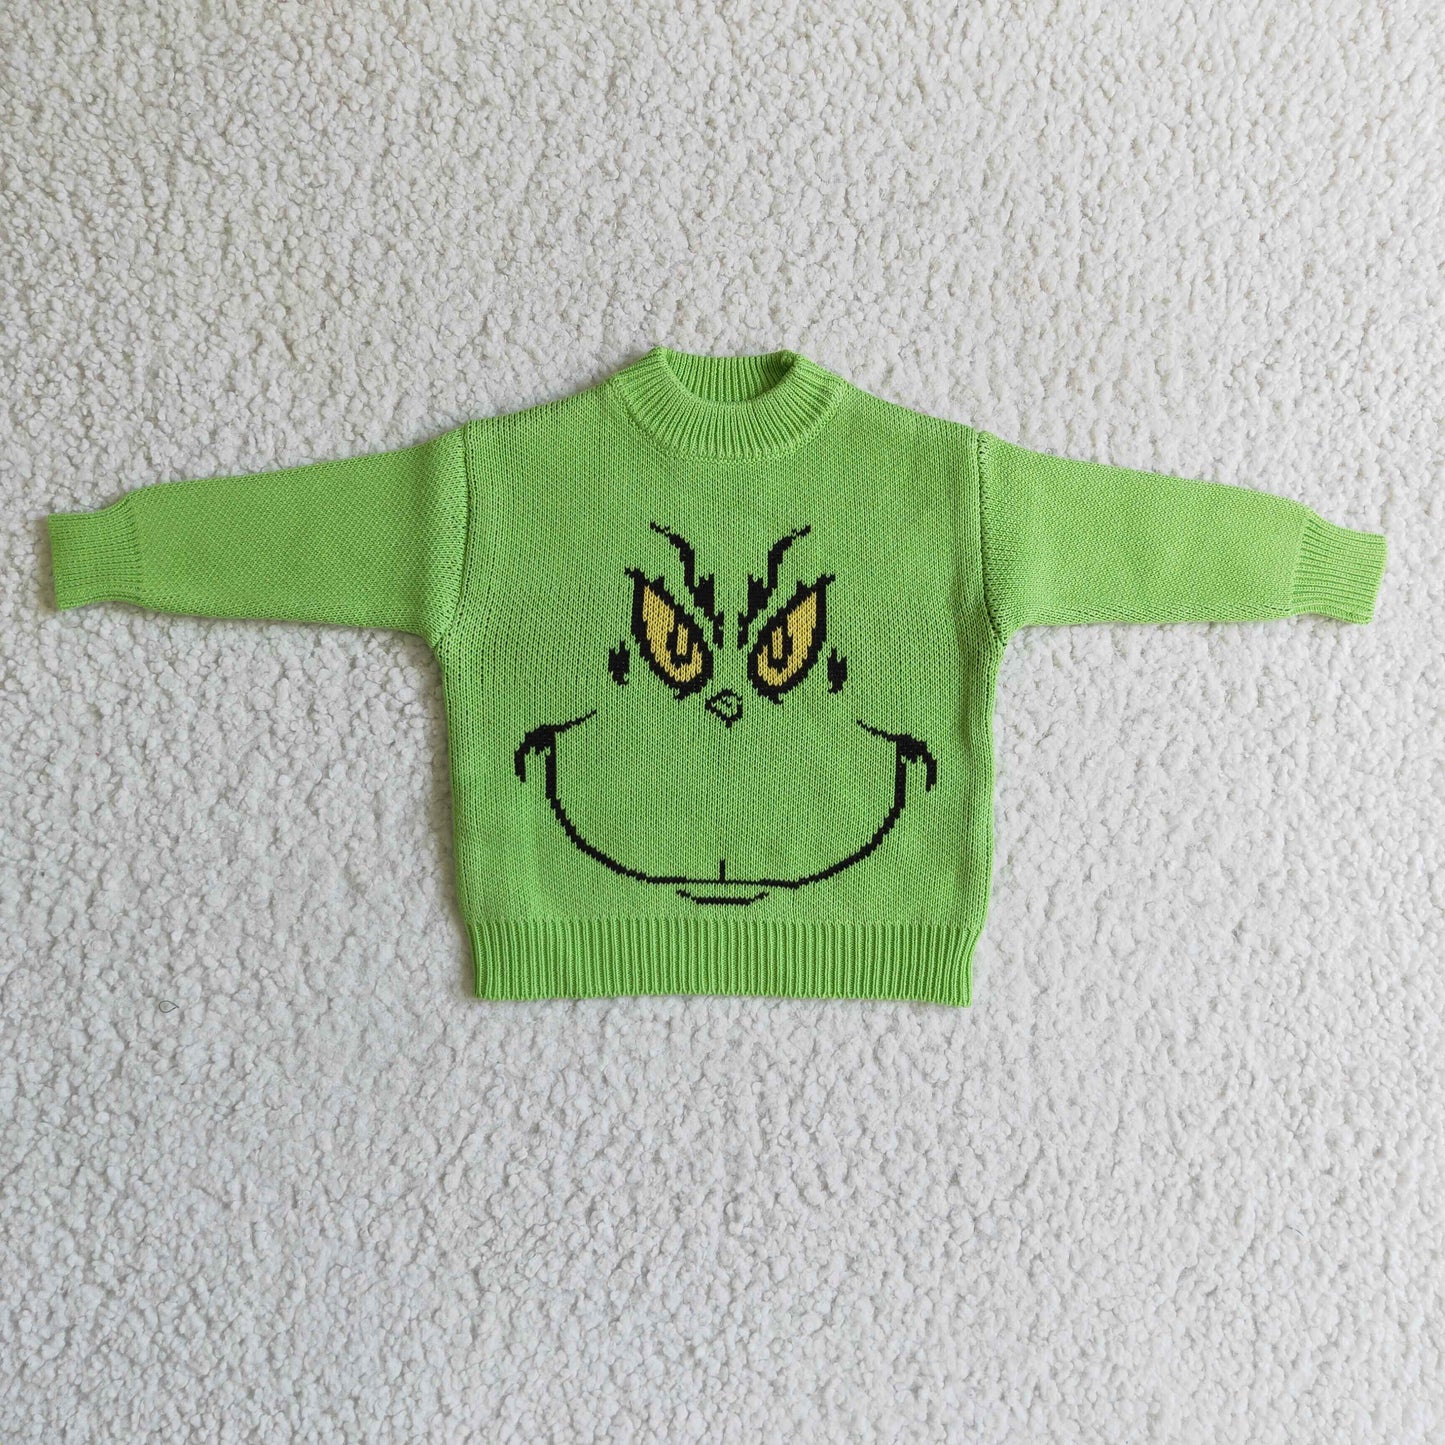 BT0099 Cartoon Christmas Green Sweater